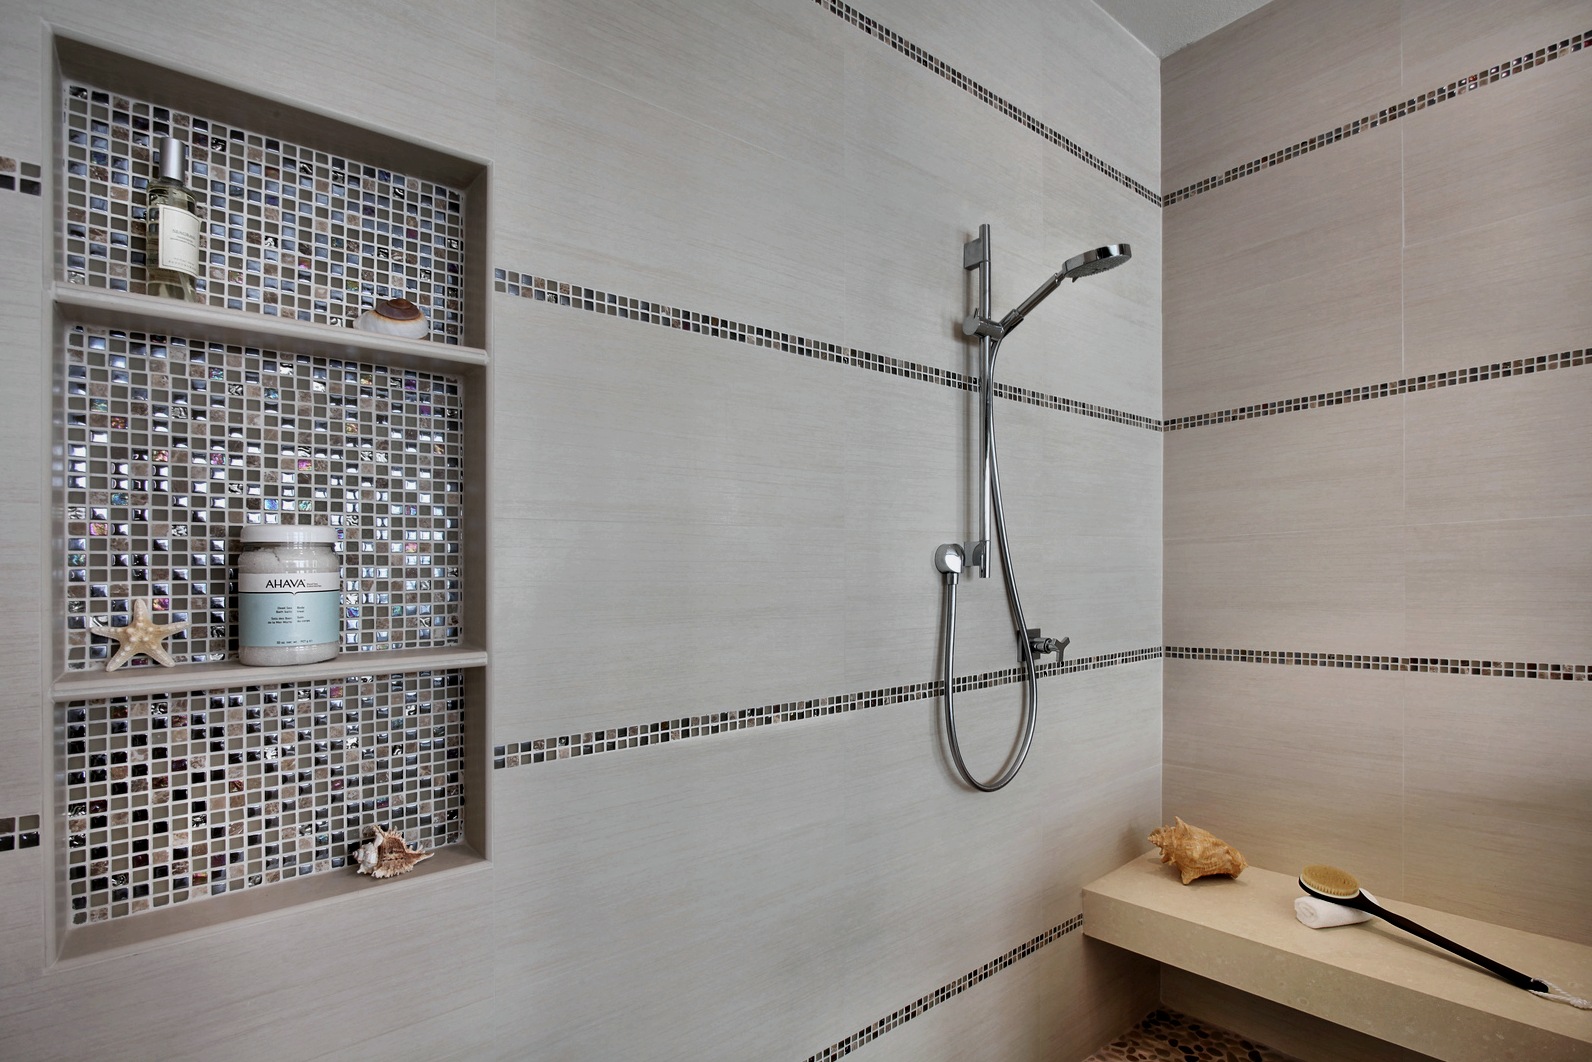 A fürdőszobában található mozaiklapok áttekintése, ajánlások a választáshoz